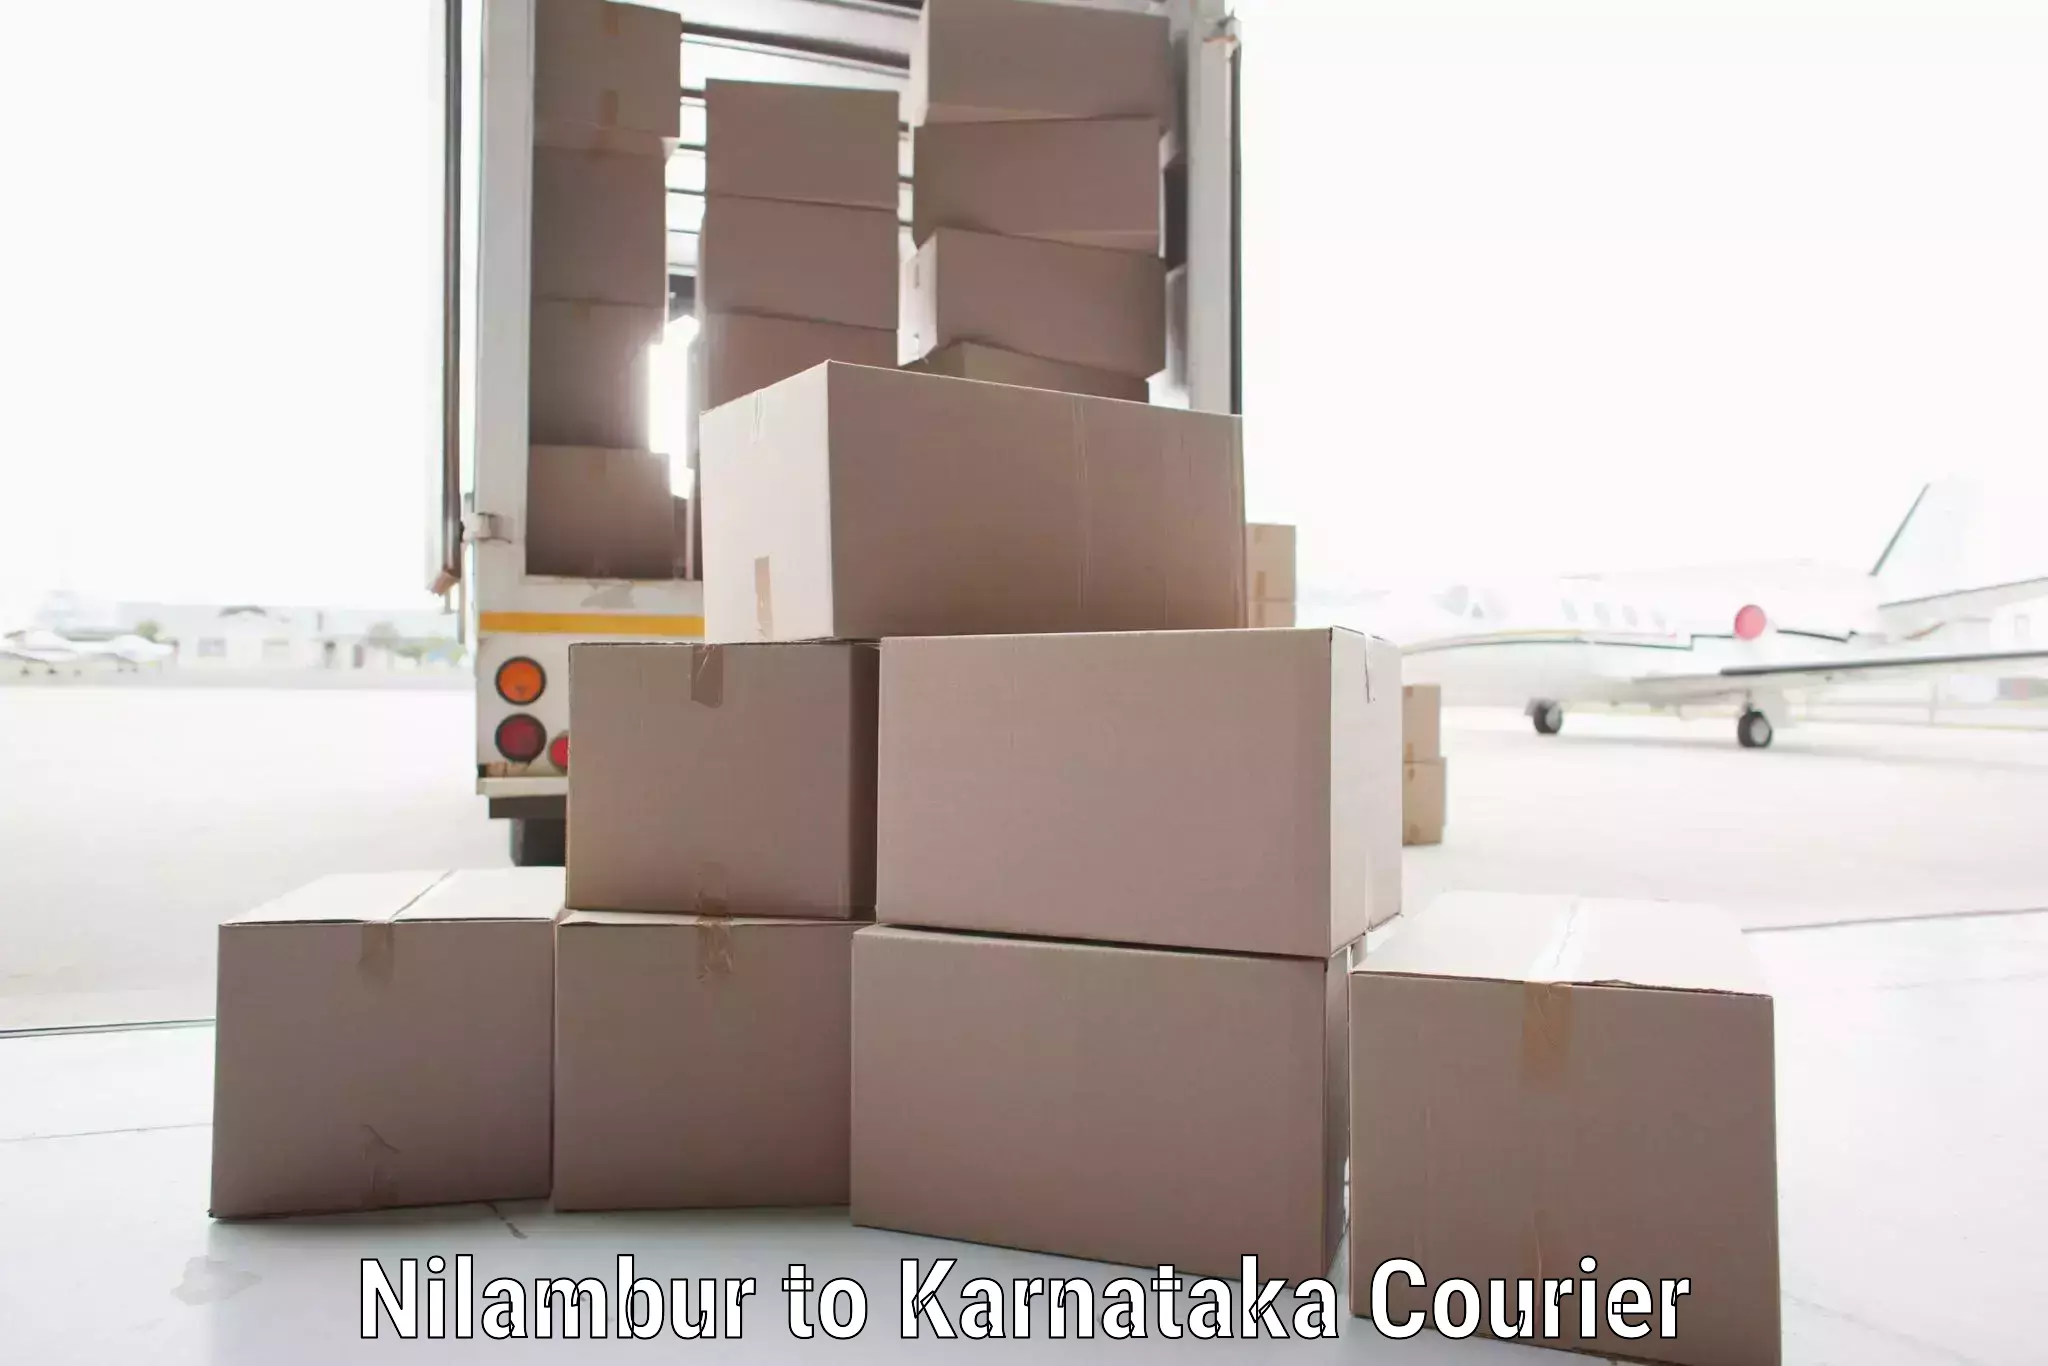 Holiday shipping services Nilambur to Banavara